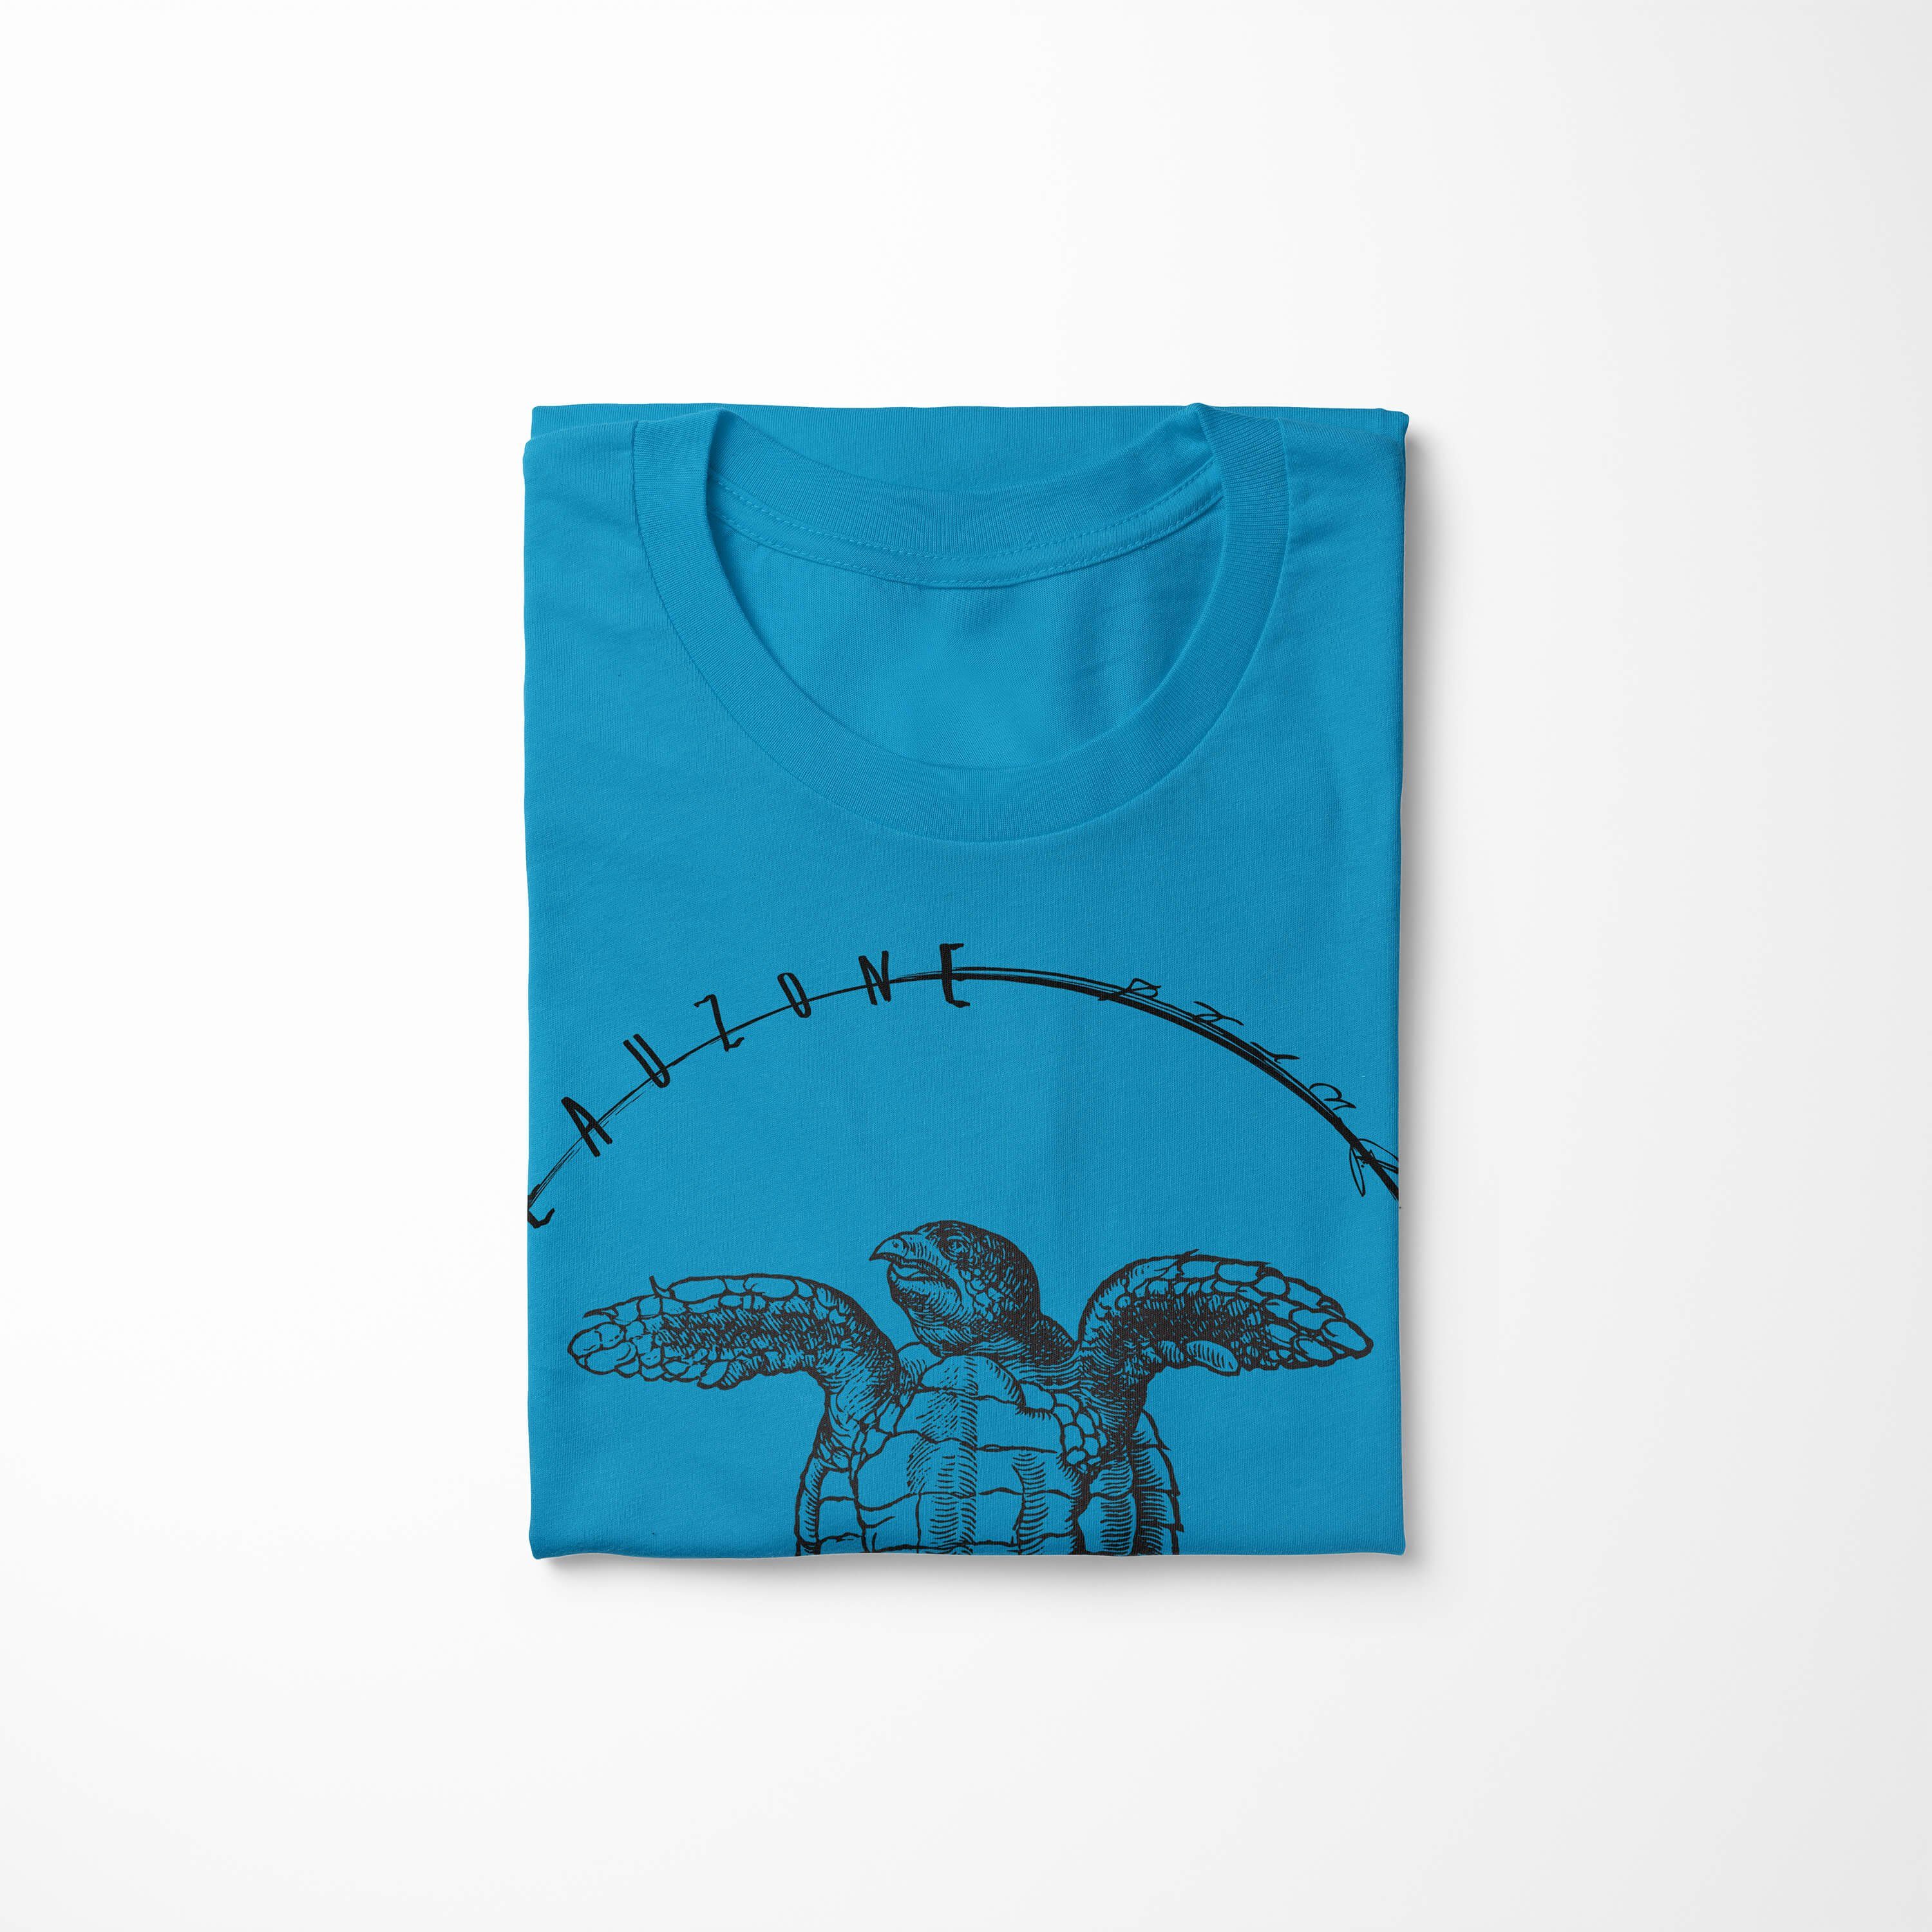 Struktur Atoll Creatures, sportlicher / feine Art Fische T-Shirt Tiefsee Schnitt - Serie: 048 Sinus Sea T-Shirt Sea und